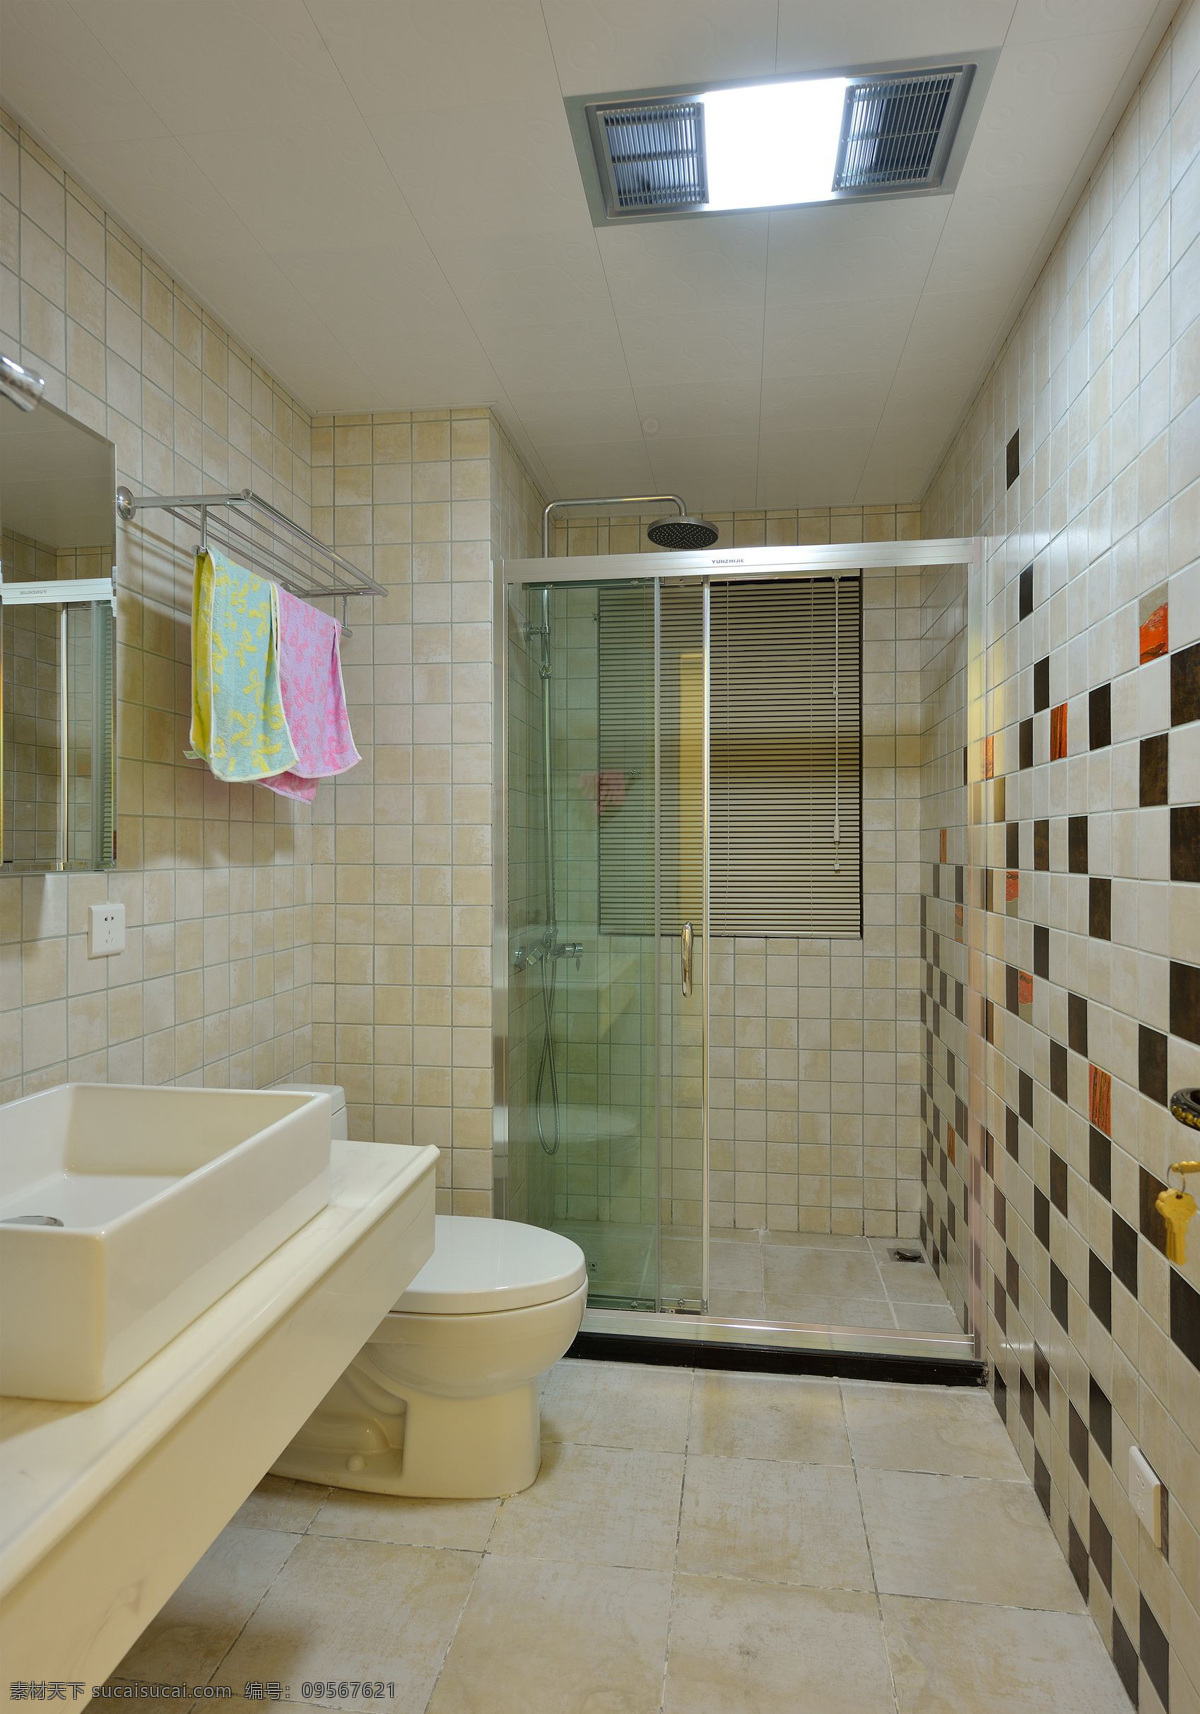 简约 风格 格子 背景 墙 卫生间 室内装修 效果图 浴室装修 瓷砖地板 瓷砖背景墙 瓷砖洗手台